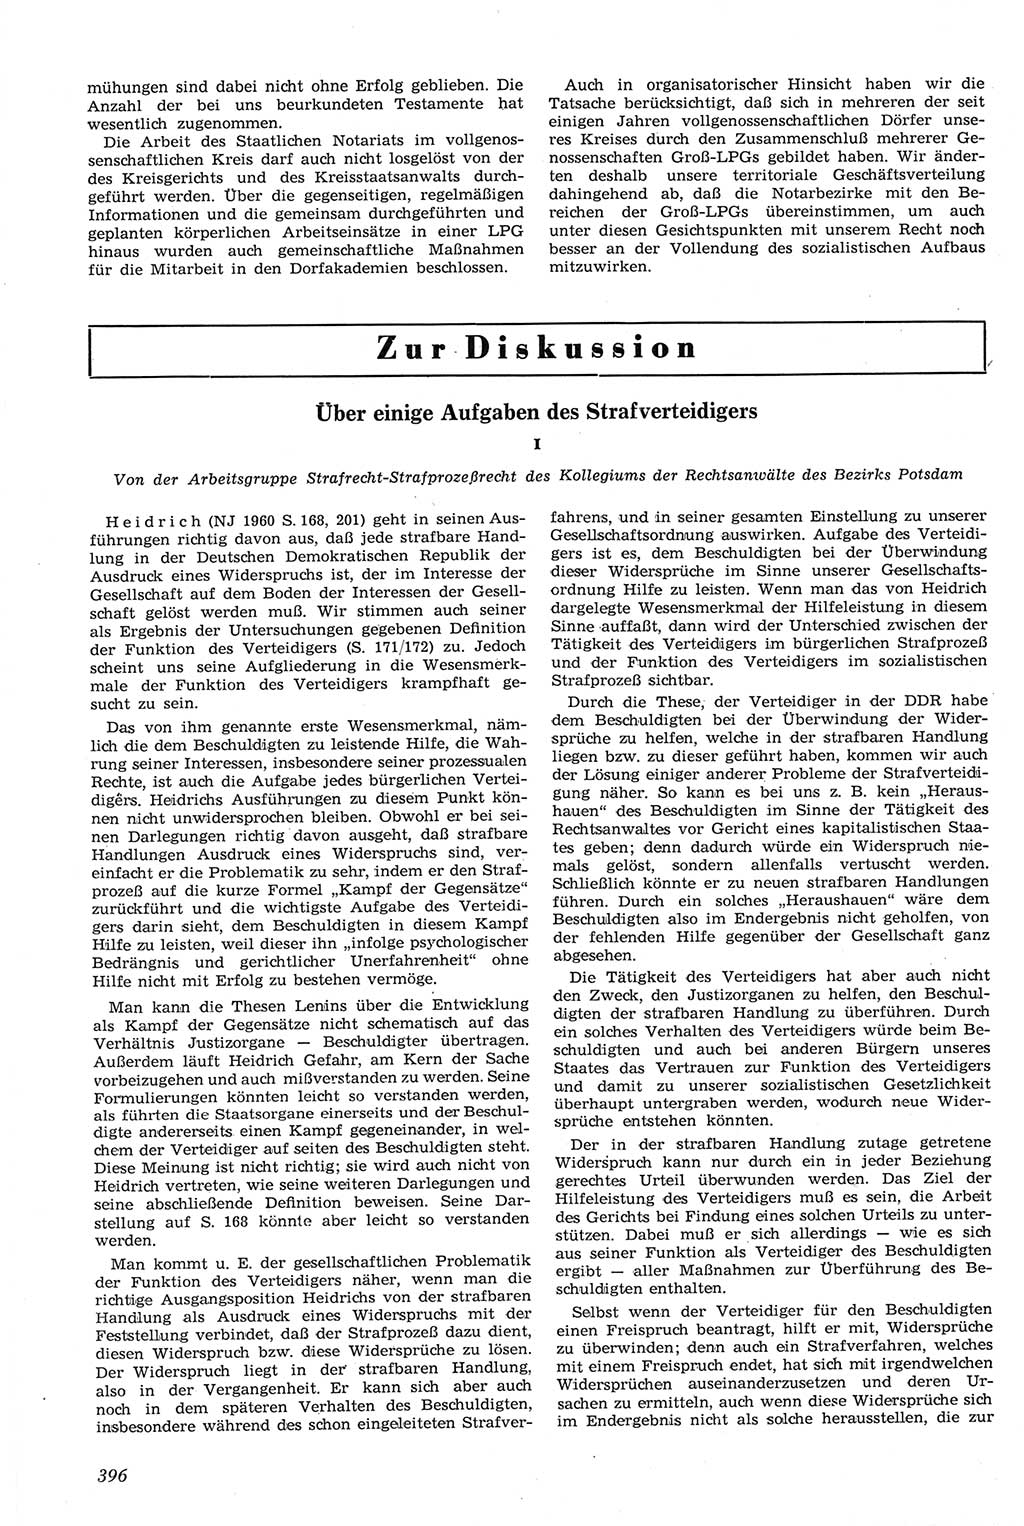 Neue Justiz (NJ), Zeitschrift für Recht und Rechtswissenschaft [Deutsche Demokratische Republik (DDR)], 14. Jahrgang 1960, Seite 396 (NJ DDR 1960, S. 396)